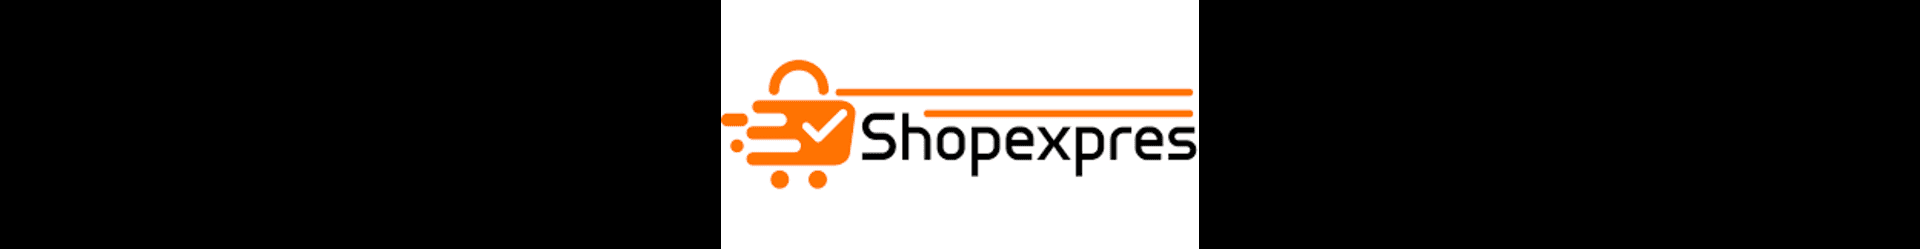 shopexpres